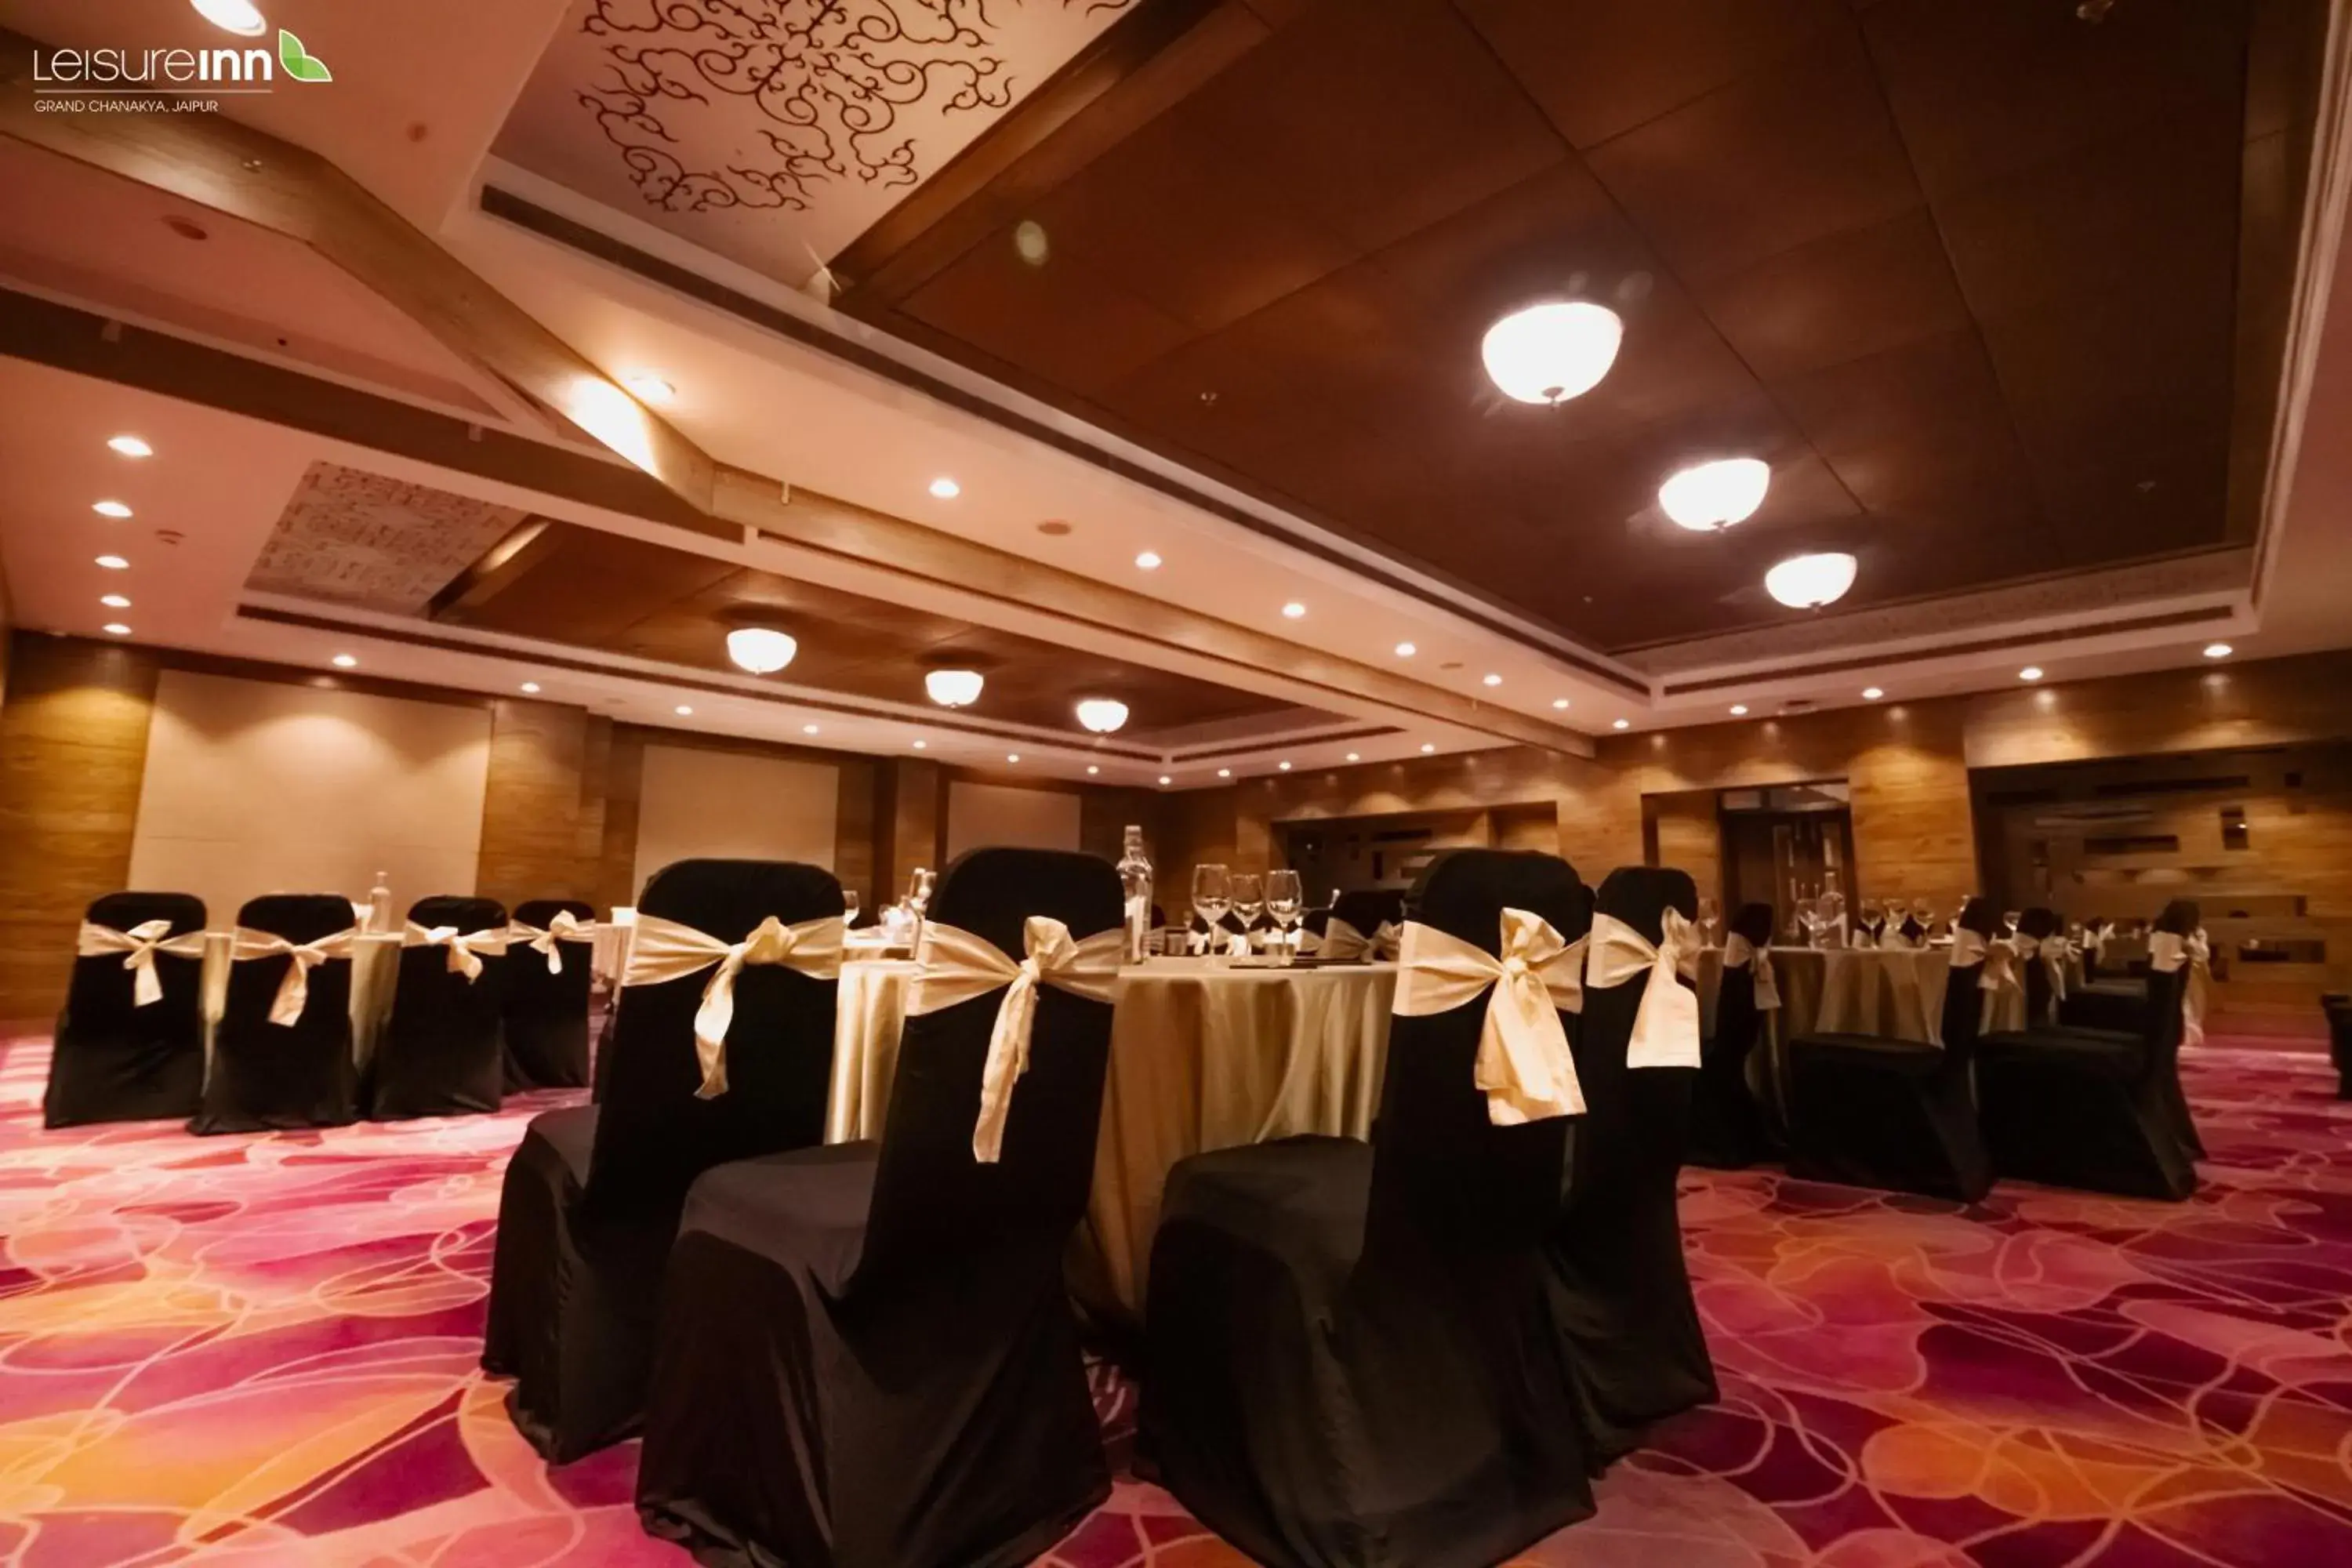 Banquet/Function facilities, Banquet Facilities in Leisure Inn Grand Chanakya